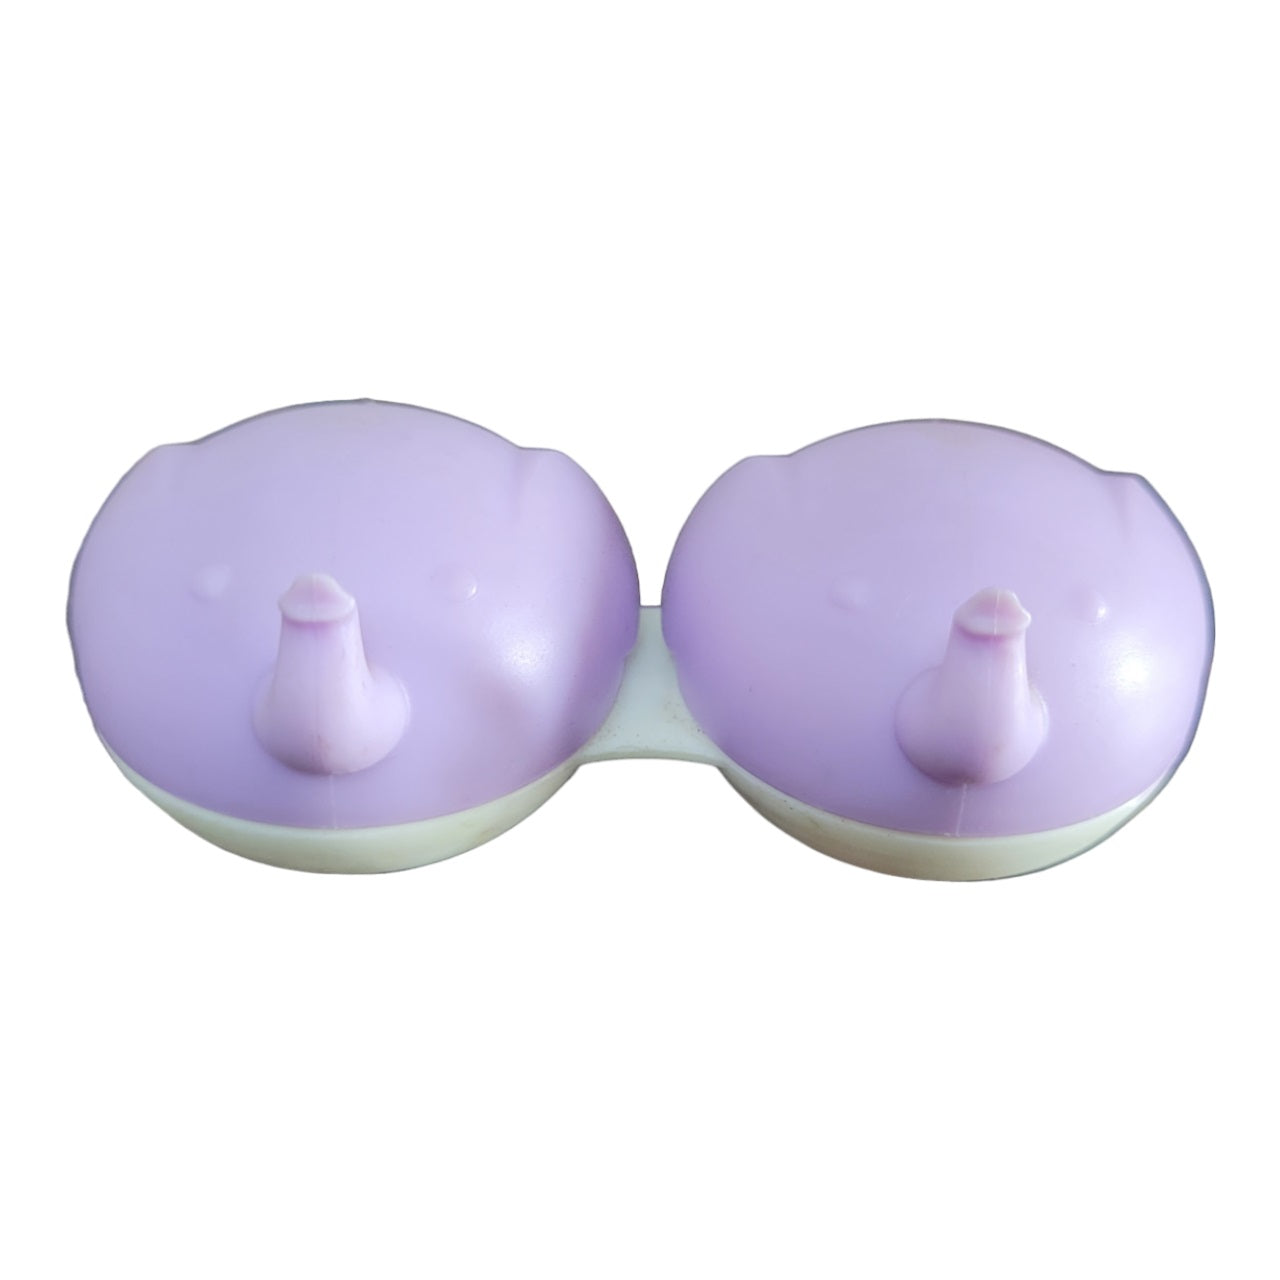 Elephant Contact Lens Case | Fancy Contact Lenses Case Purple Color by Affaires Qcase-0041